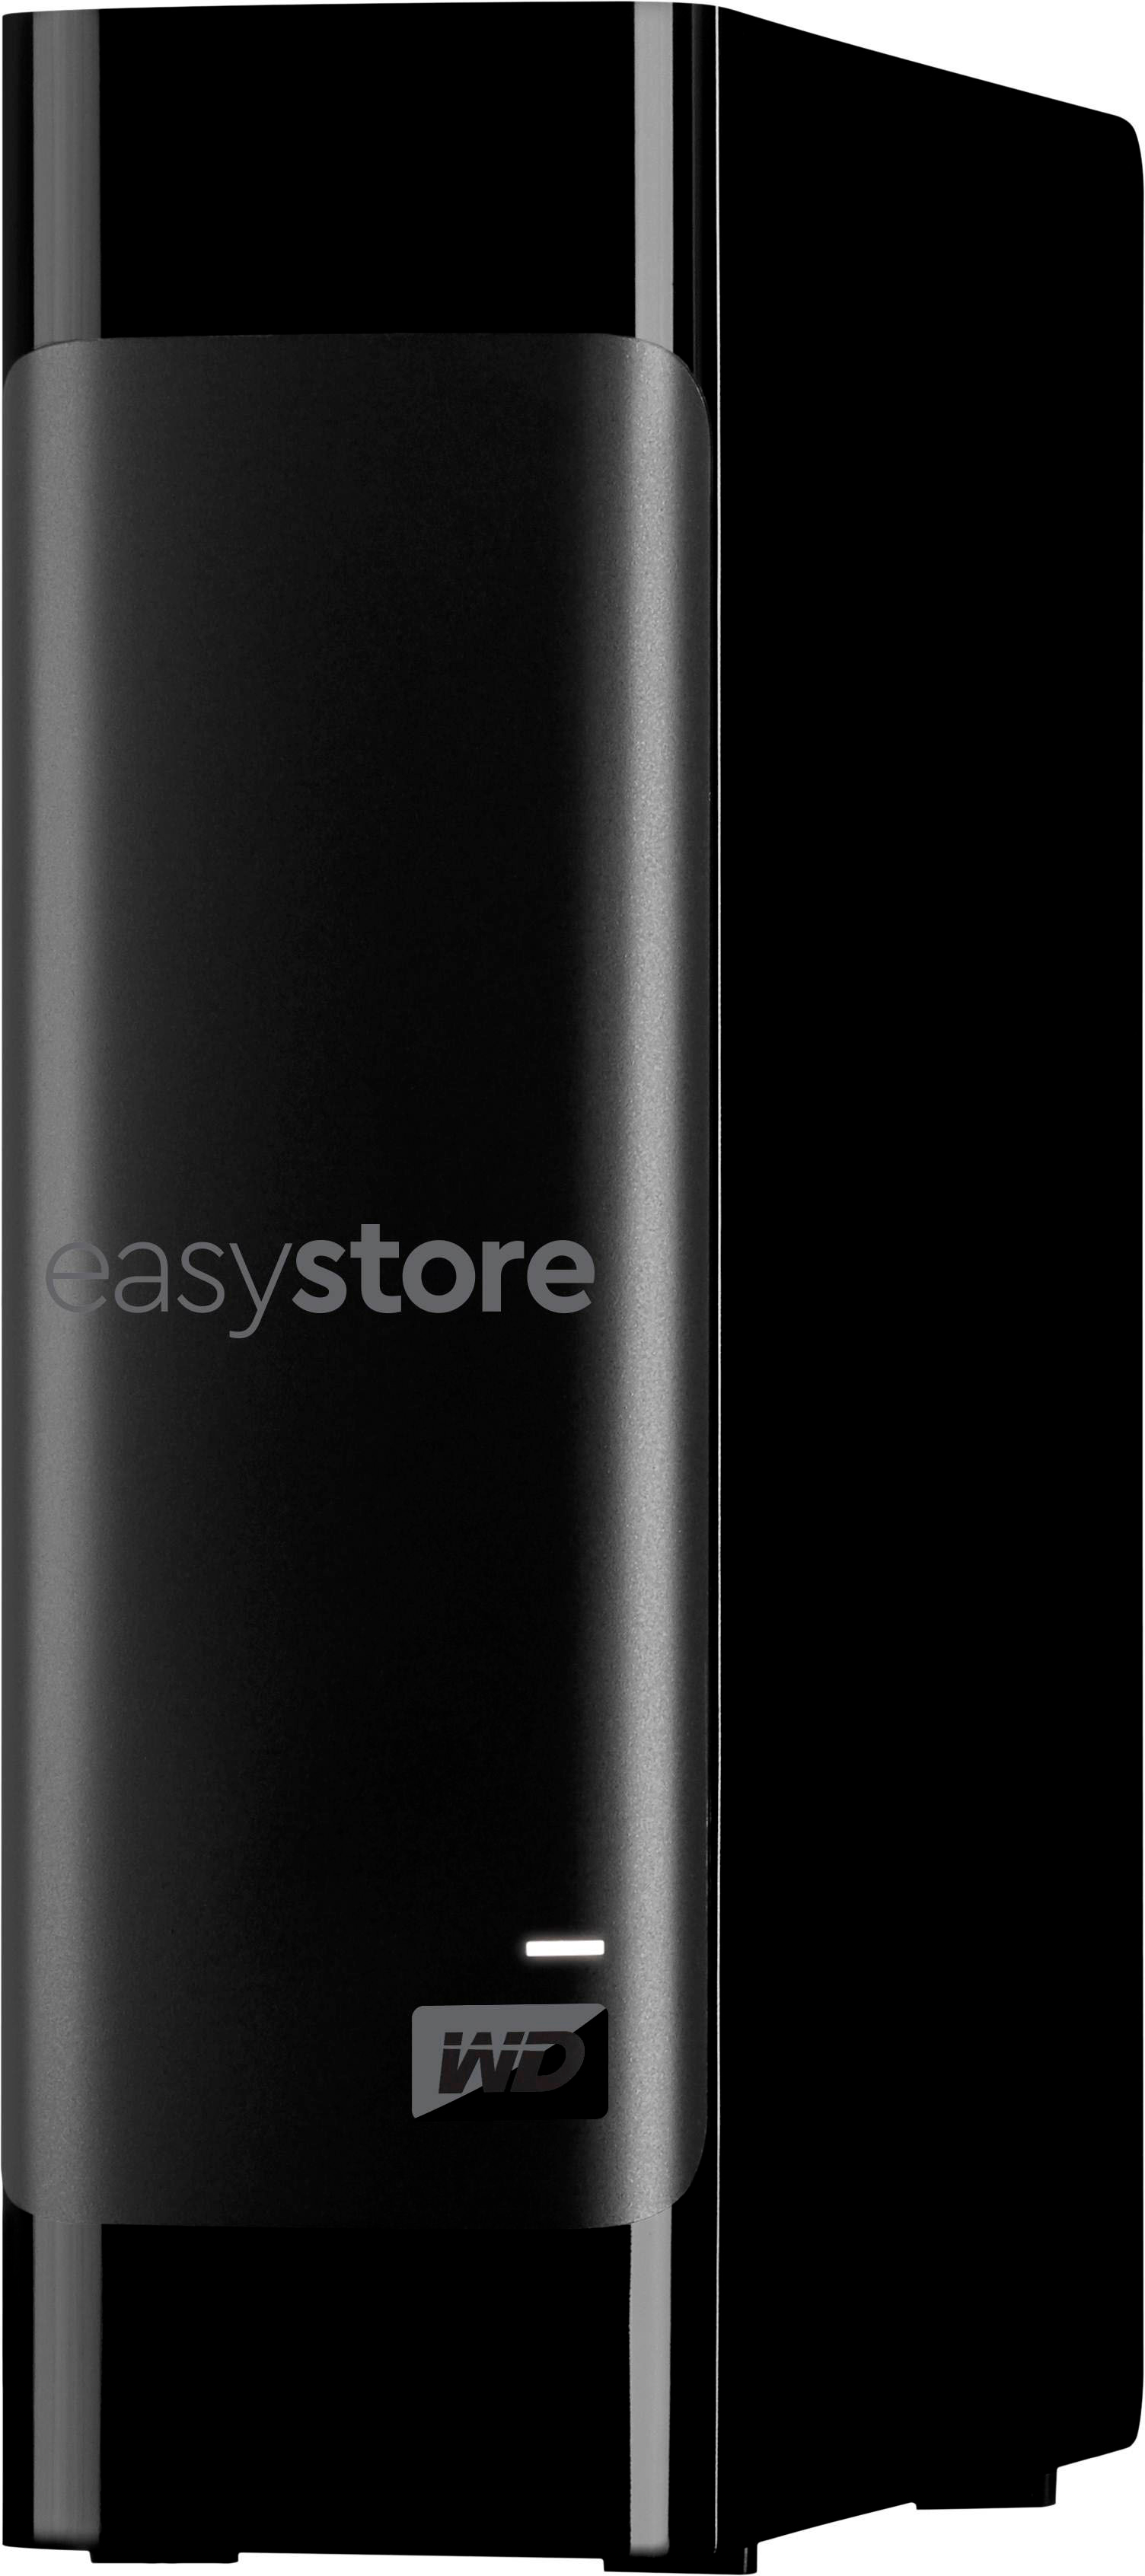 Disque dur externe de bureau USB 3.0 de 18 To easystore de WD  (WDBAMA0180HBK-NESE) - Noir - Seulement chez Best Buy